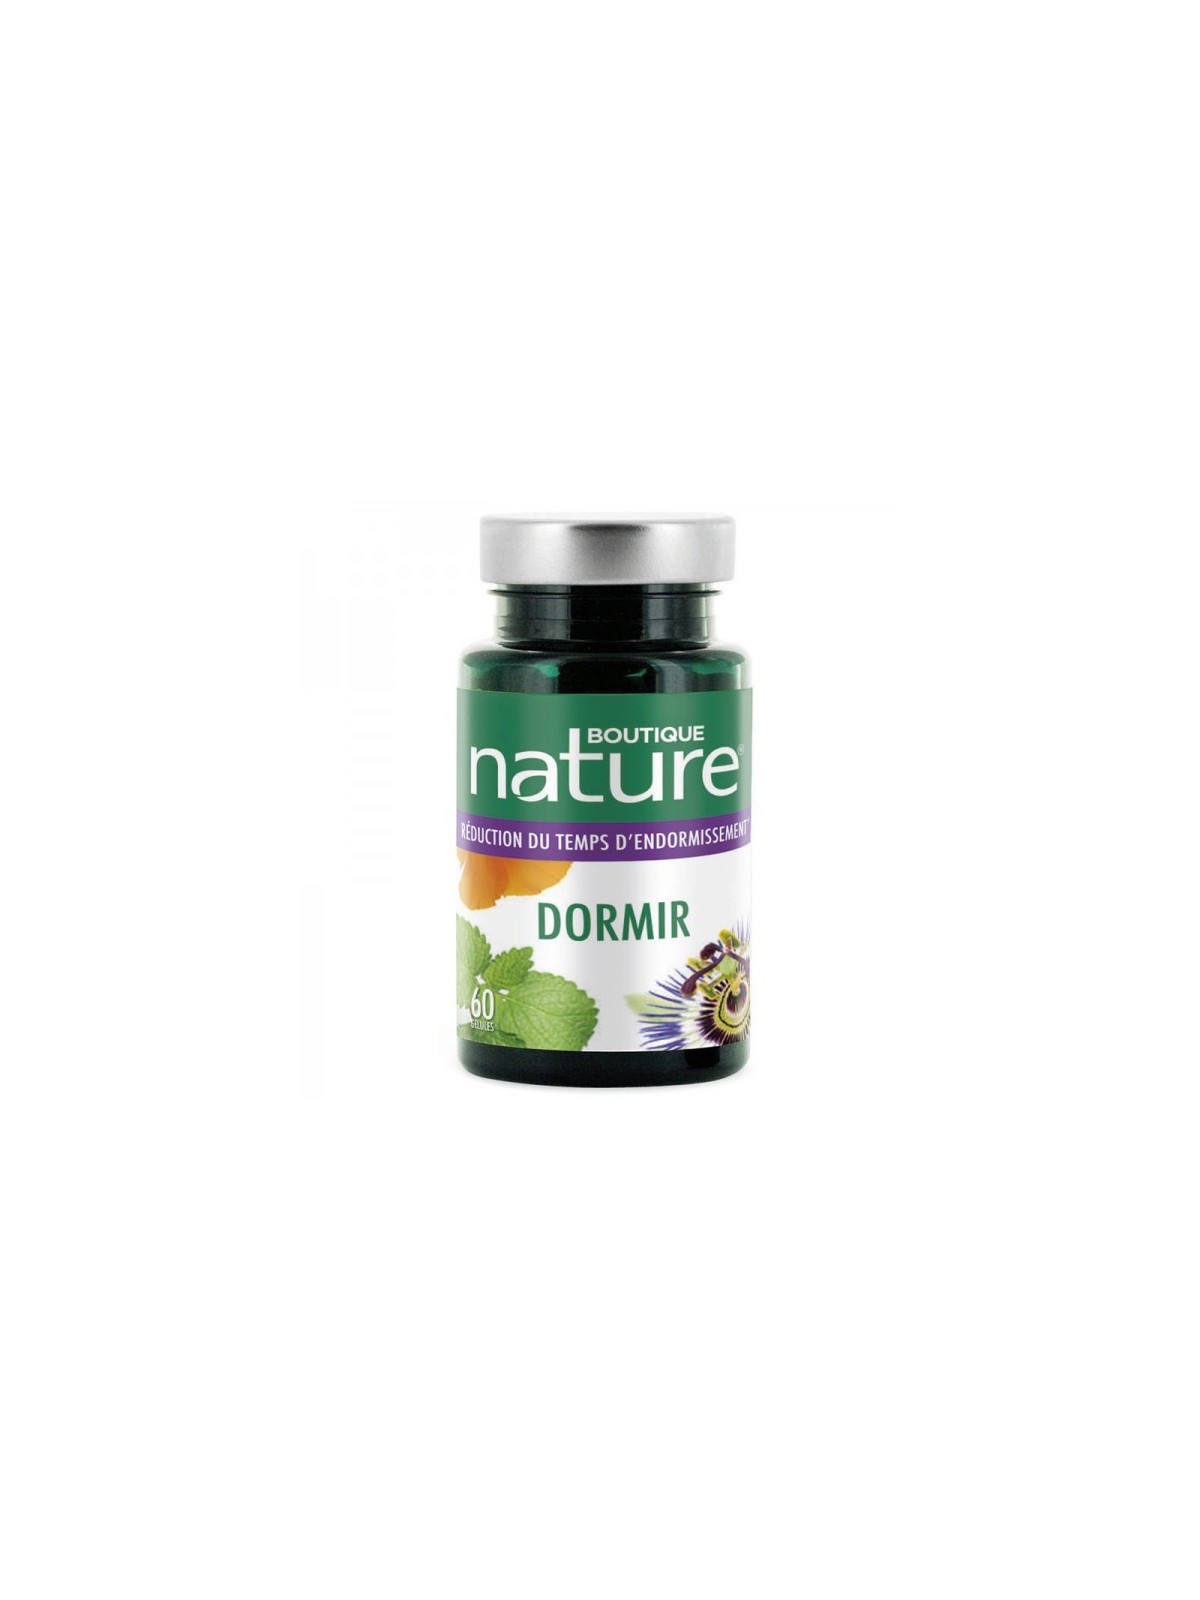 Dormir (60 gélules) - Boutique Nature